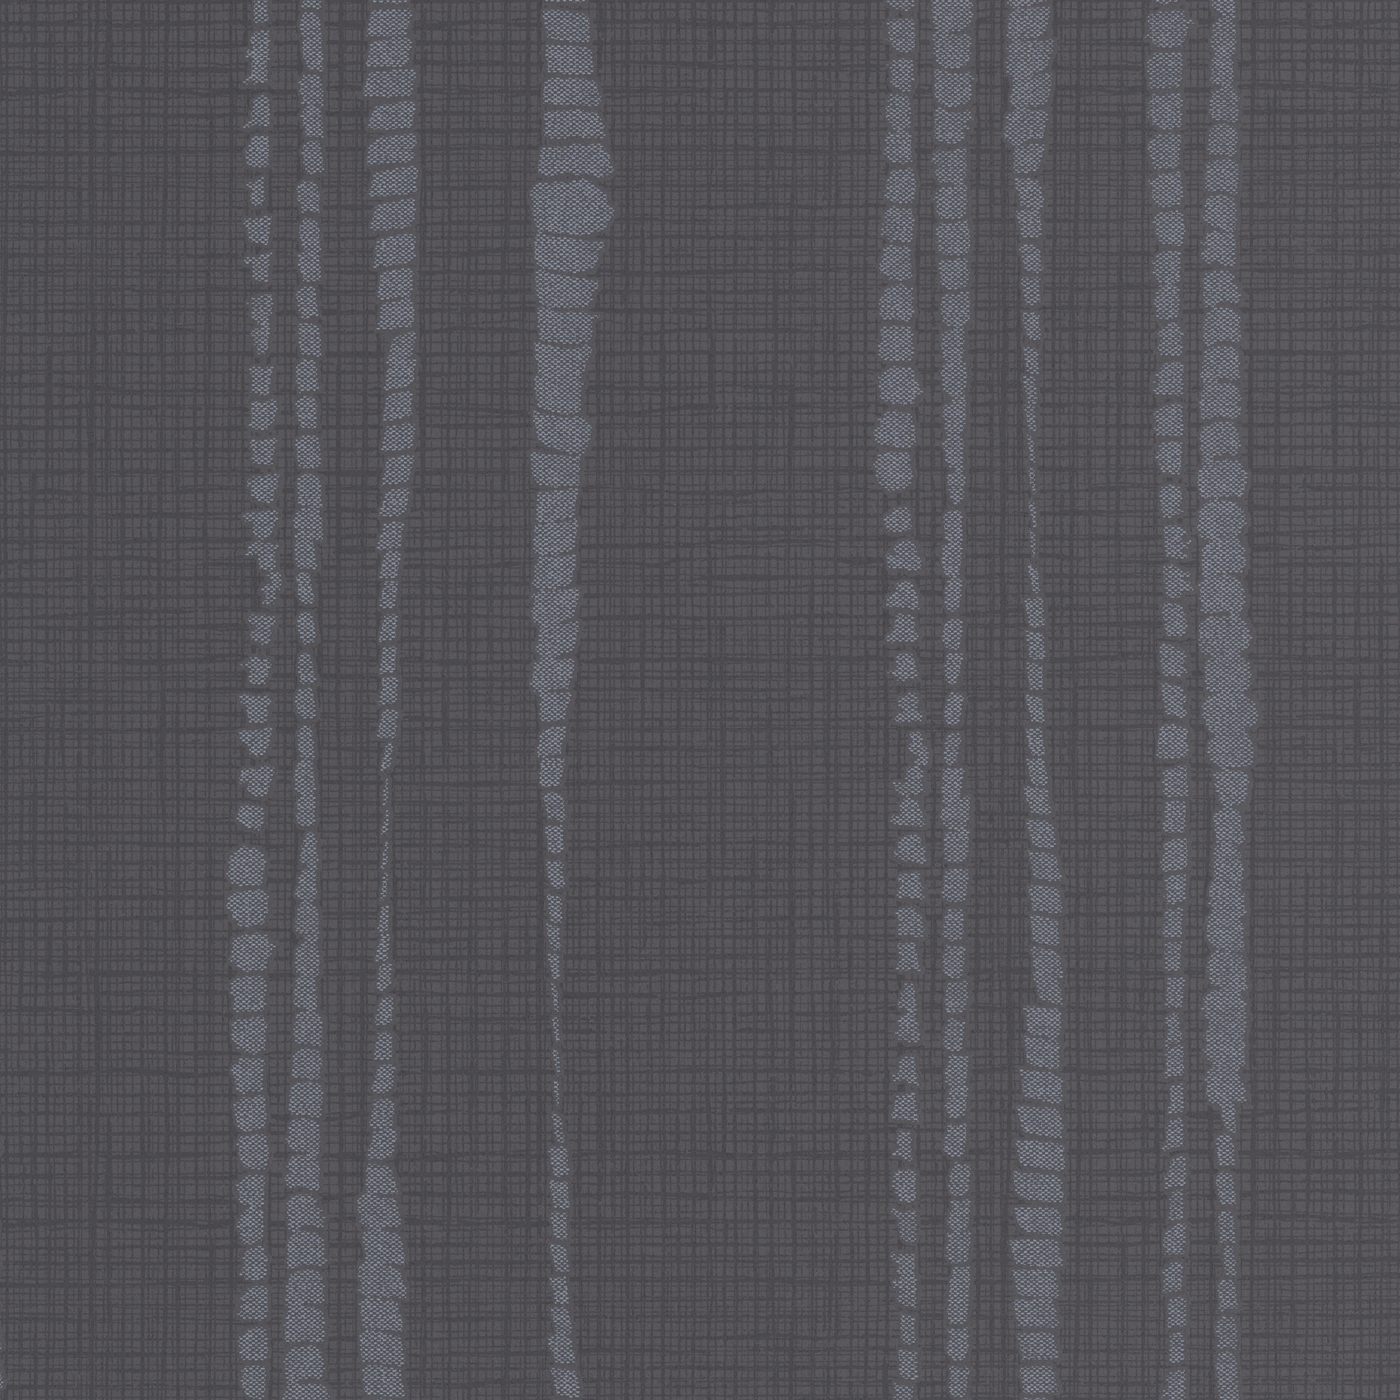 Kelly Hoppen Style Laddered Stripe Wallpaper Lowe S Canada